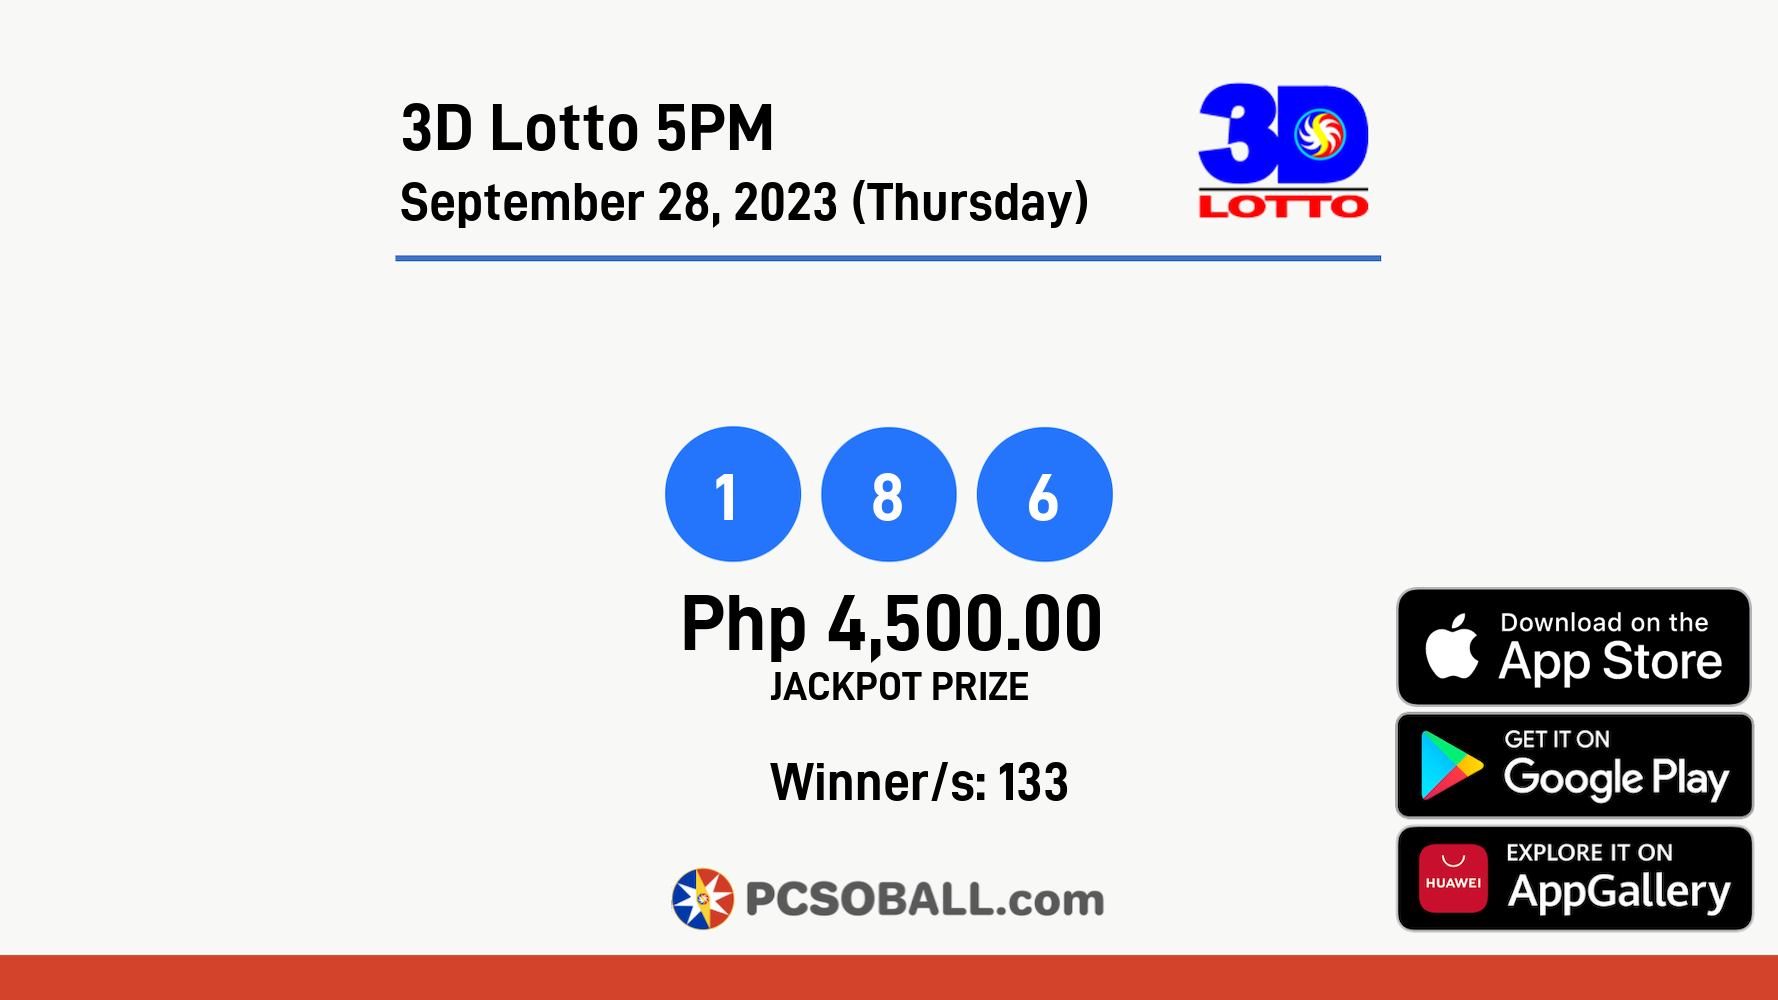 3D Lotto 5PM September 28, 2023 (Thursday) Result